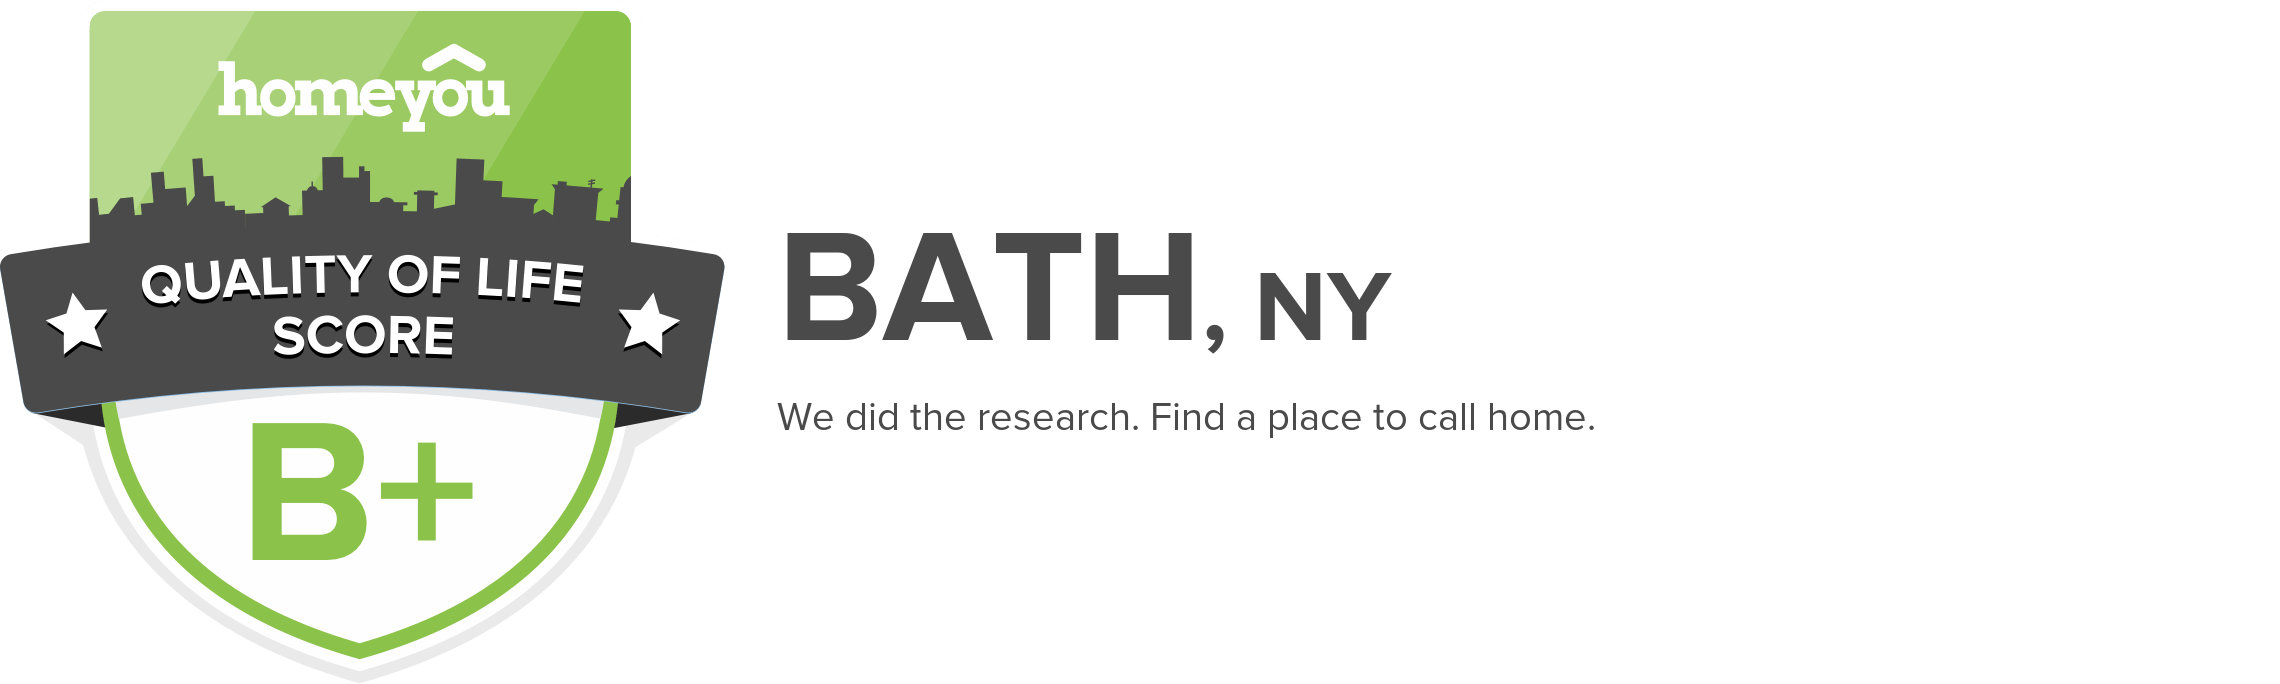 Bath, NY